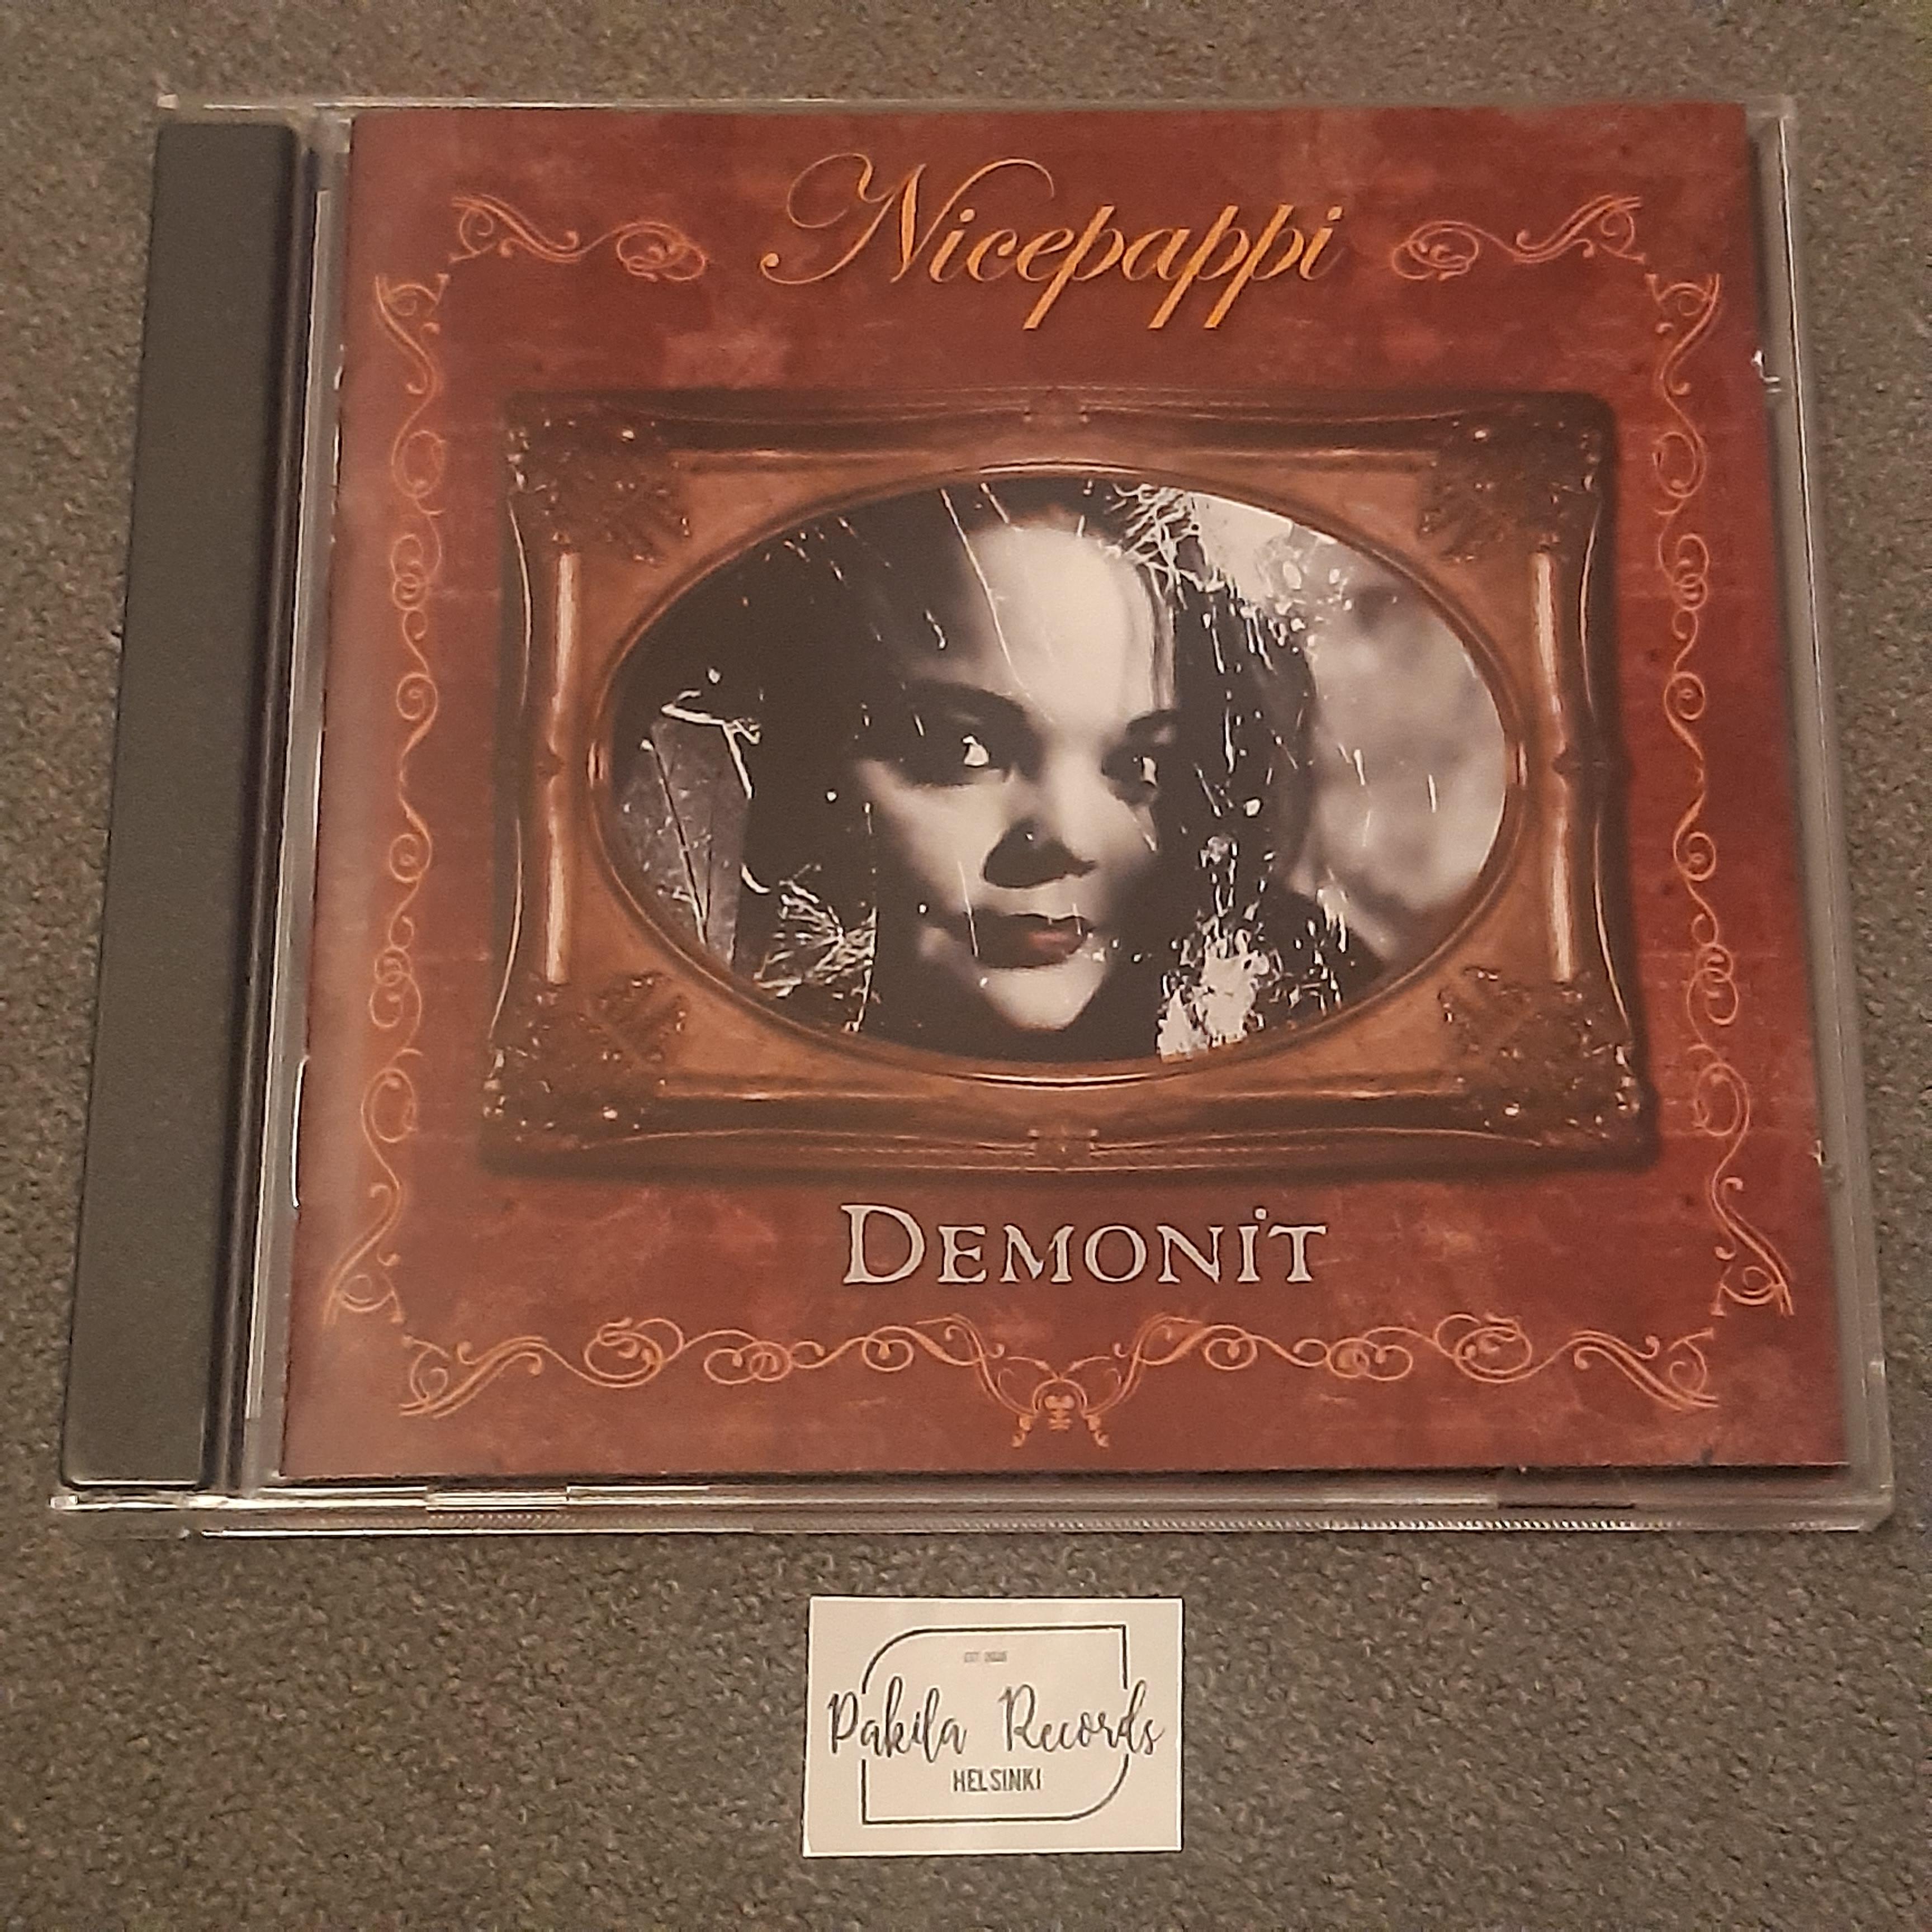 Nicepappi - Demonit - CD (käytetty)